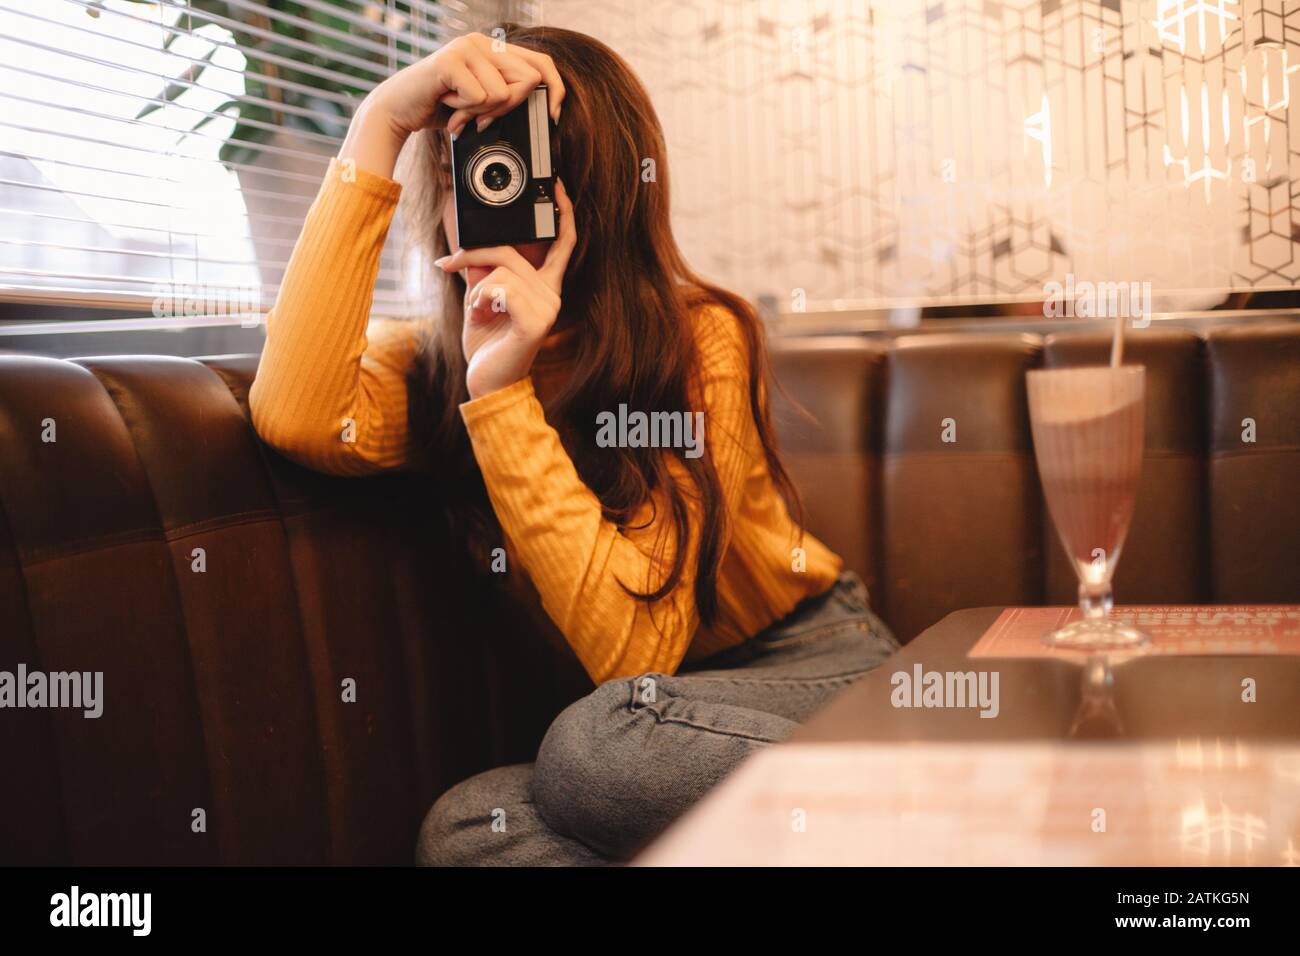 Junge Frau fotografiert mit Vintage-Kamera, während sie im Café sitzt Stockfoto